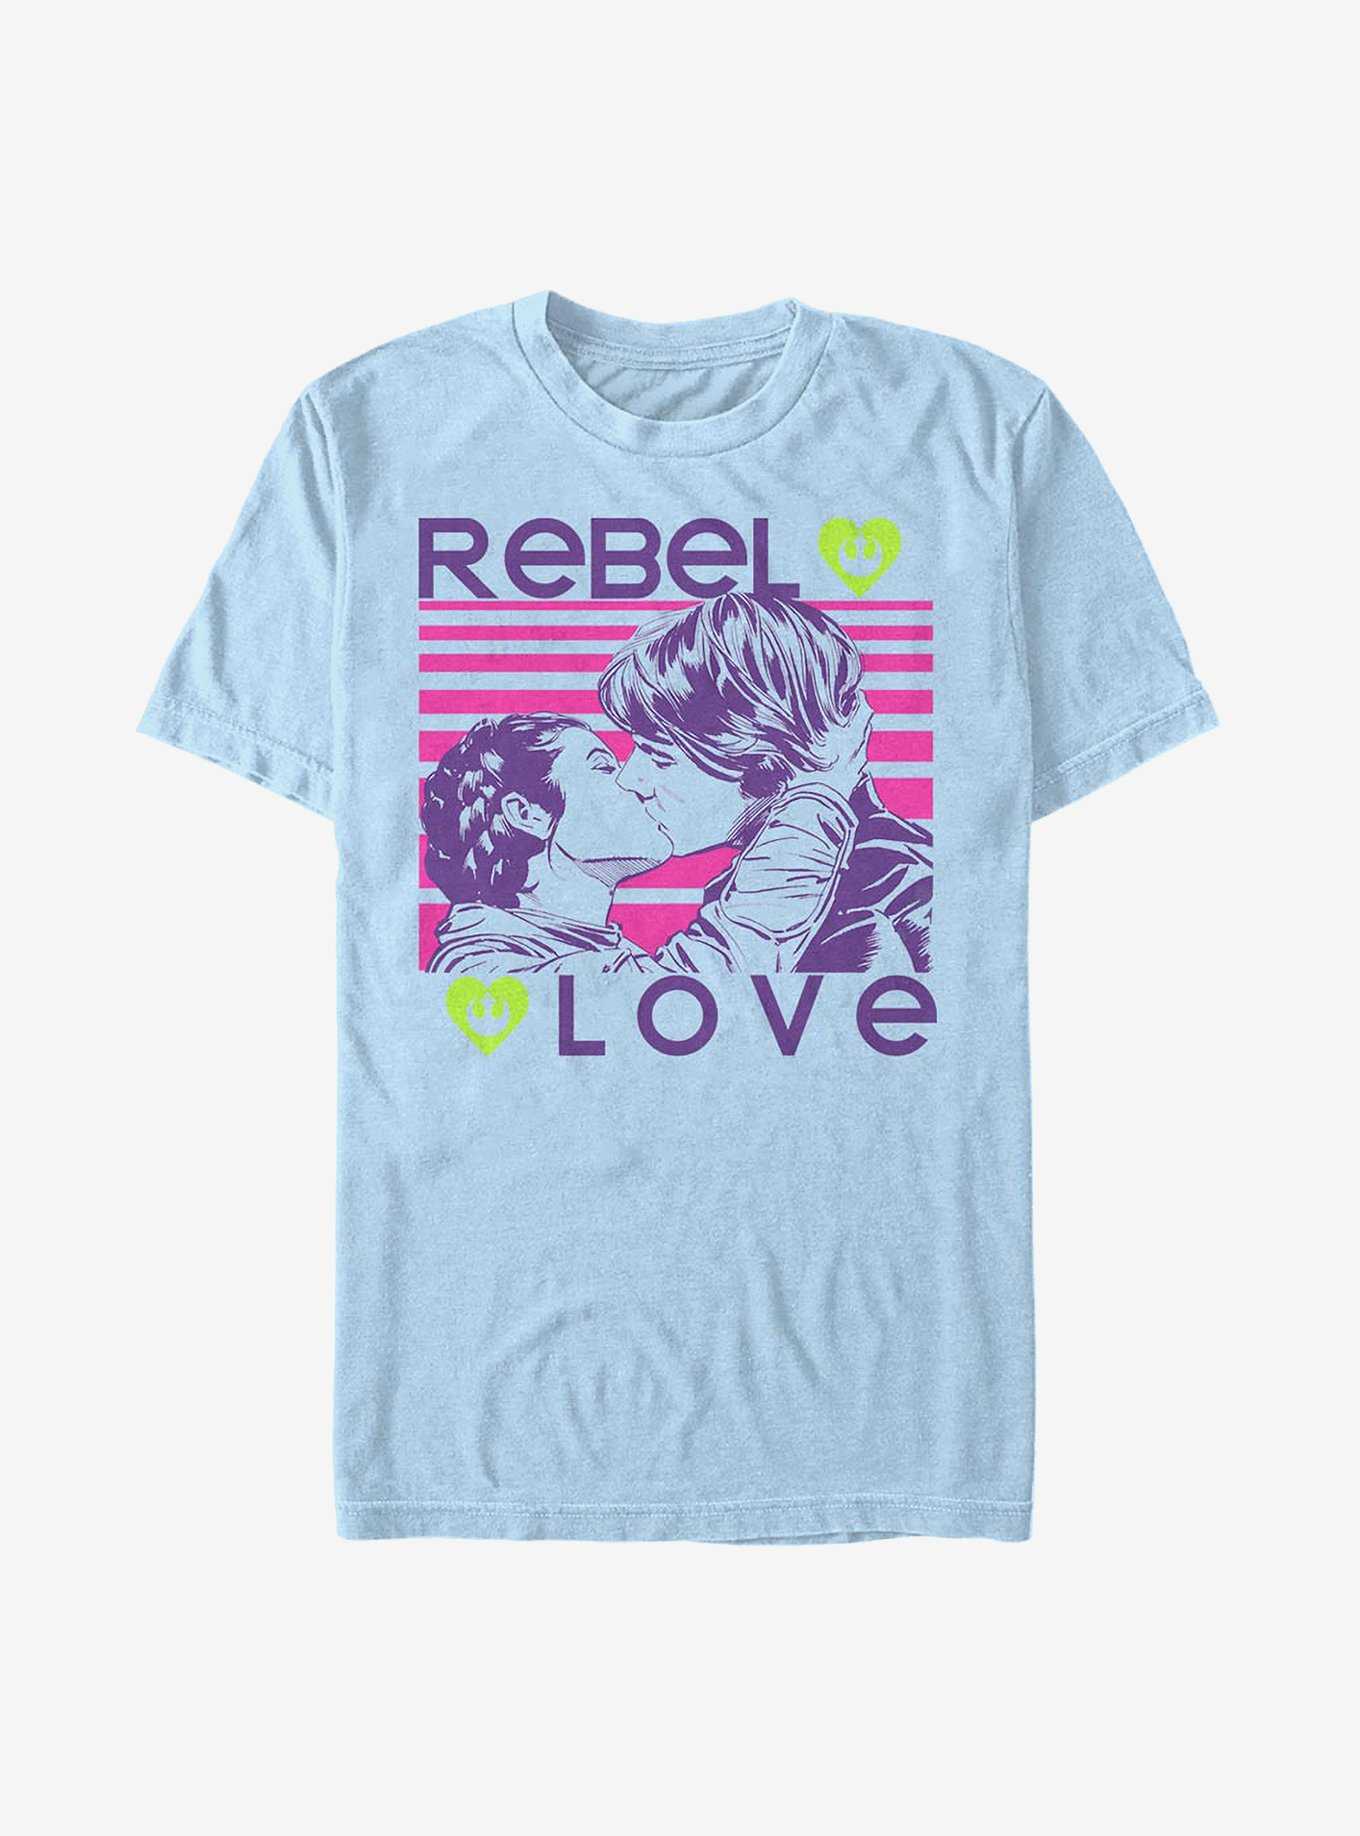 Star Wars Rebel Love T-Shirt, , hi-res